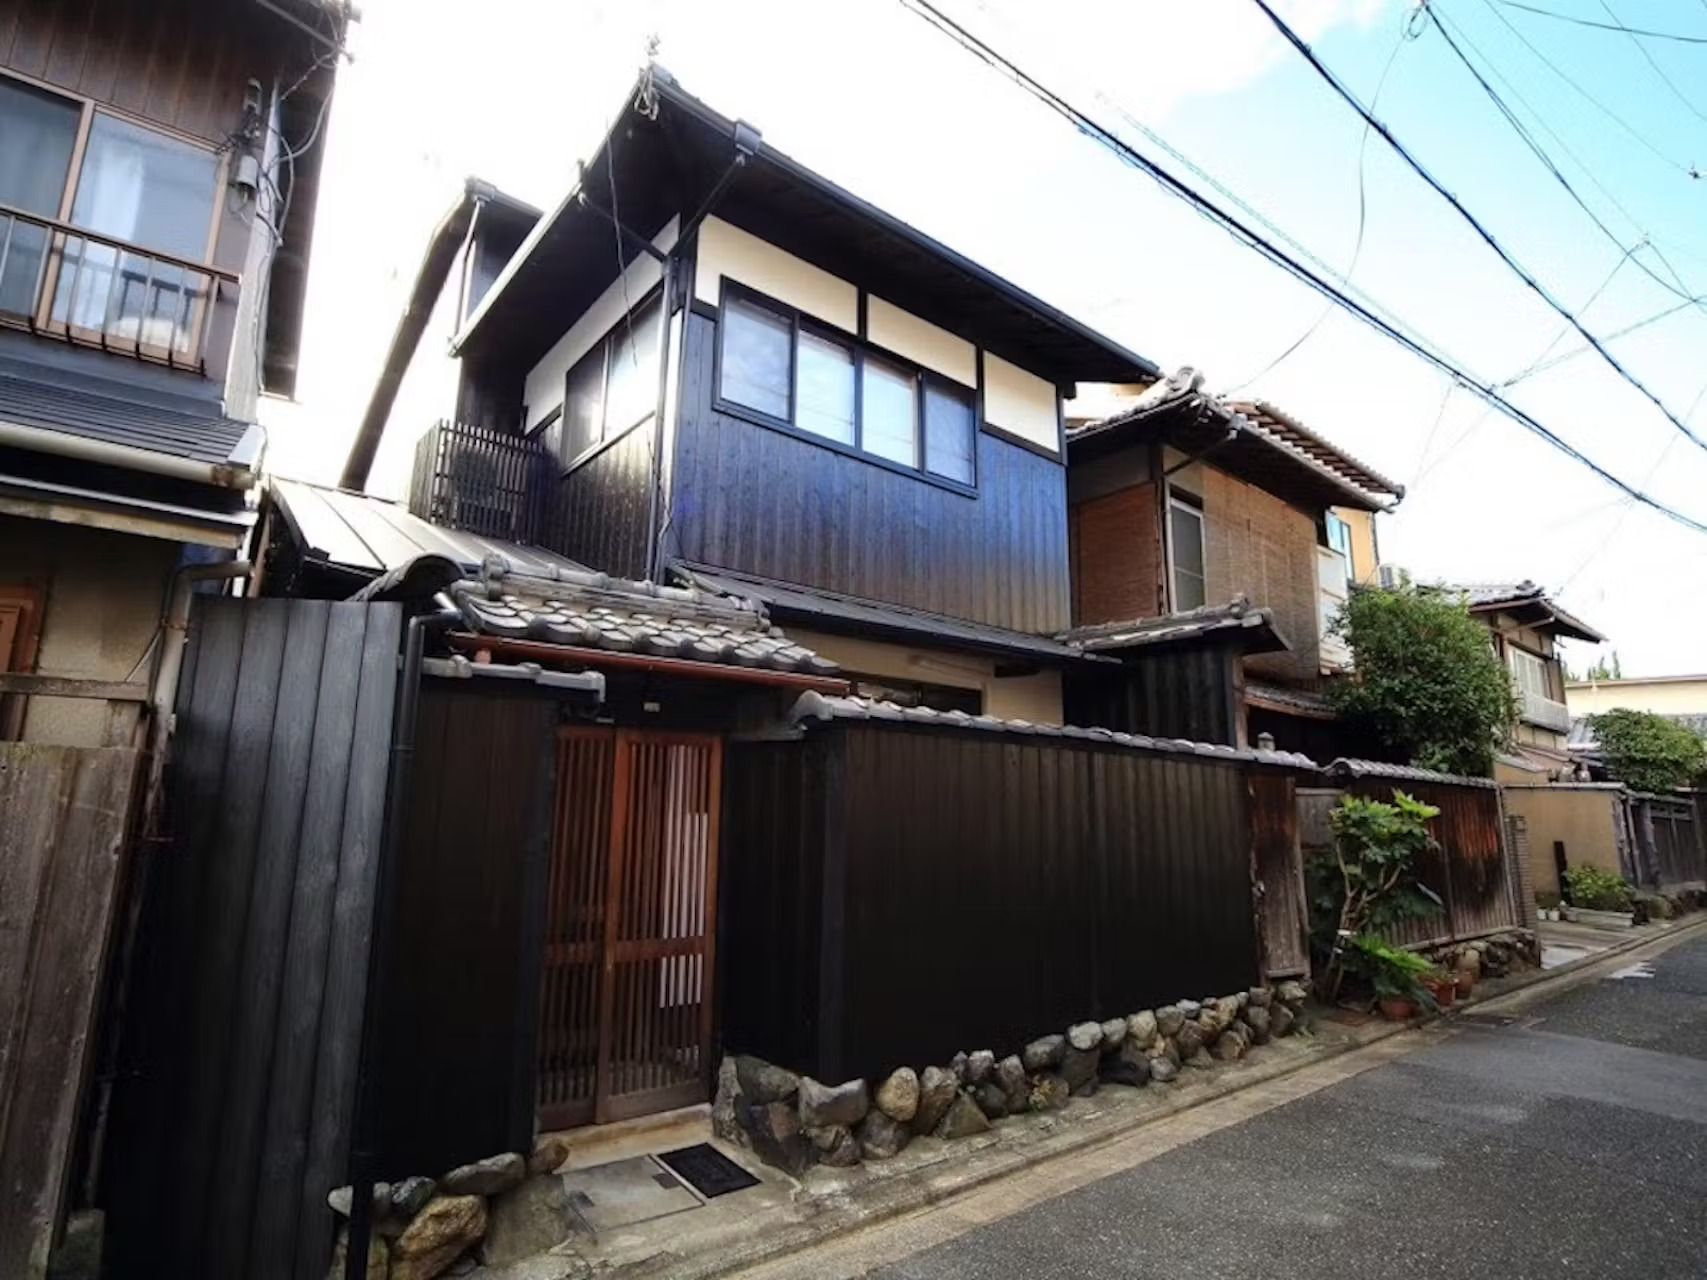 分散型民泊 Kamon Inn Inari( カモンイン 稲荷 )【Vacation STAY提供】 image